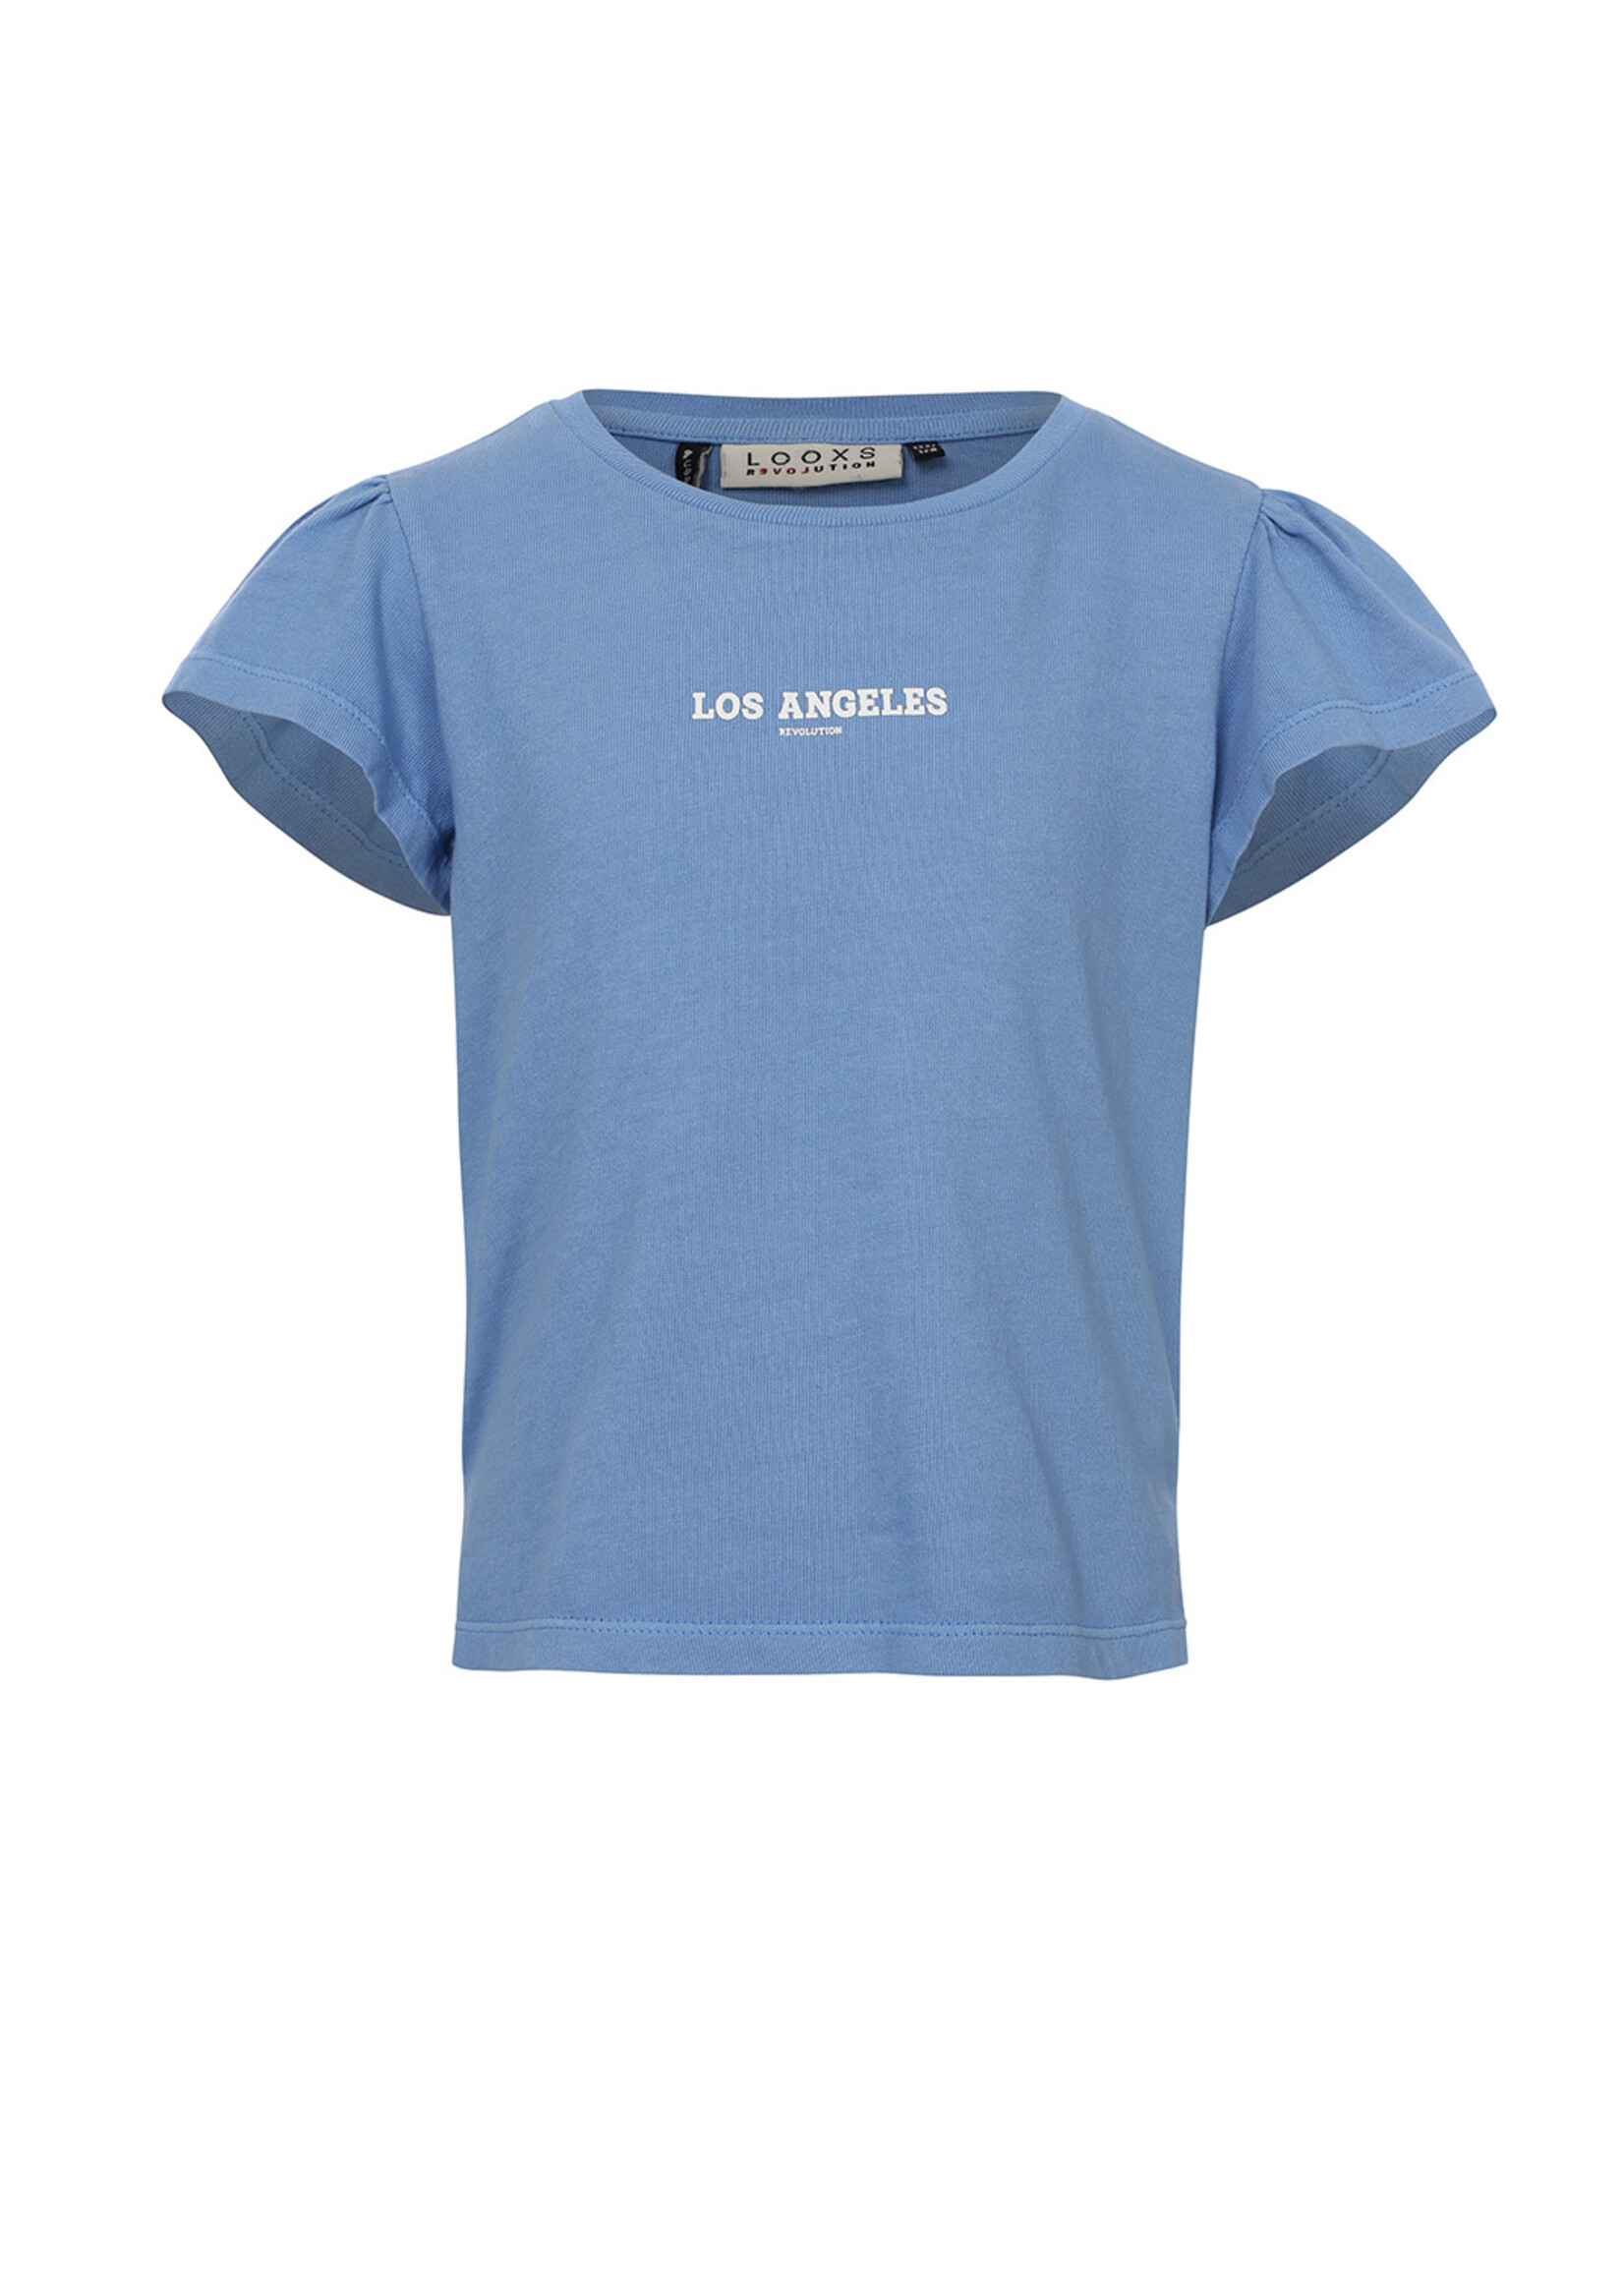 LOOXS 10sixteen 10Sixteen T-shirt sky blue